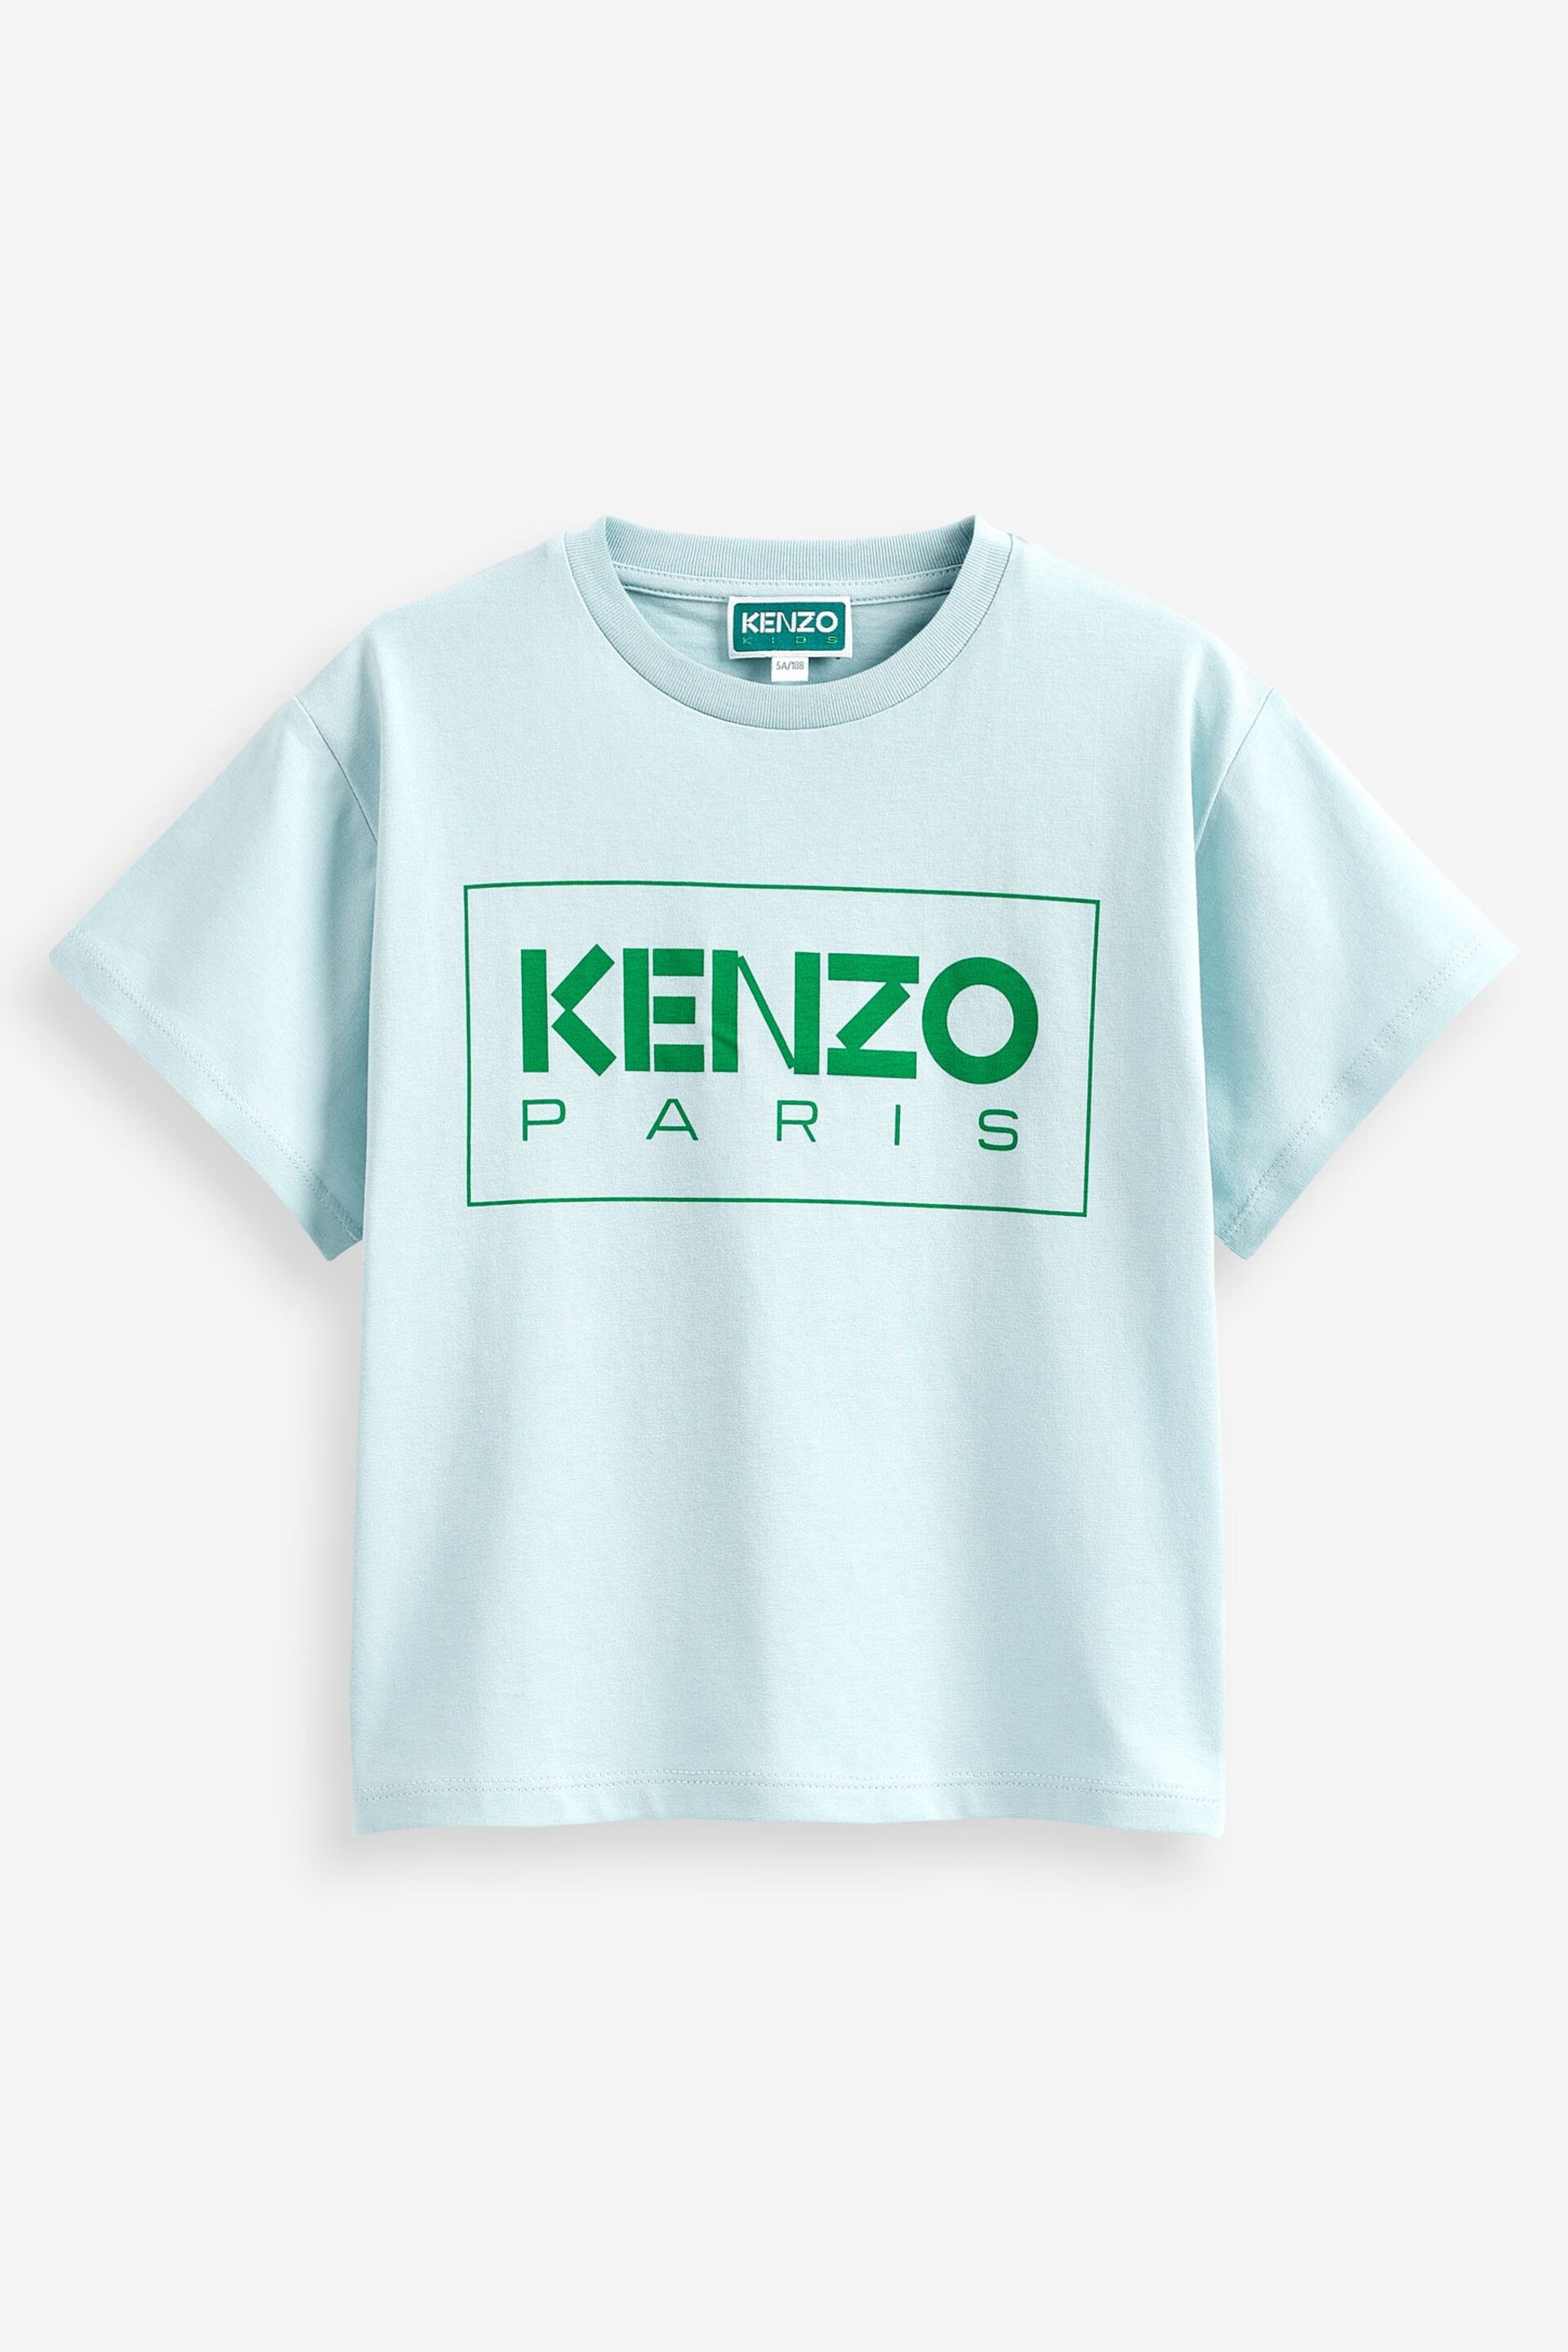 Kenzo Kids Blue Logo Unisex T-Shirt - Image 4 of 4